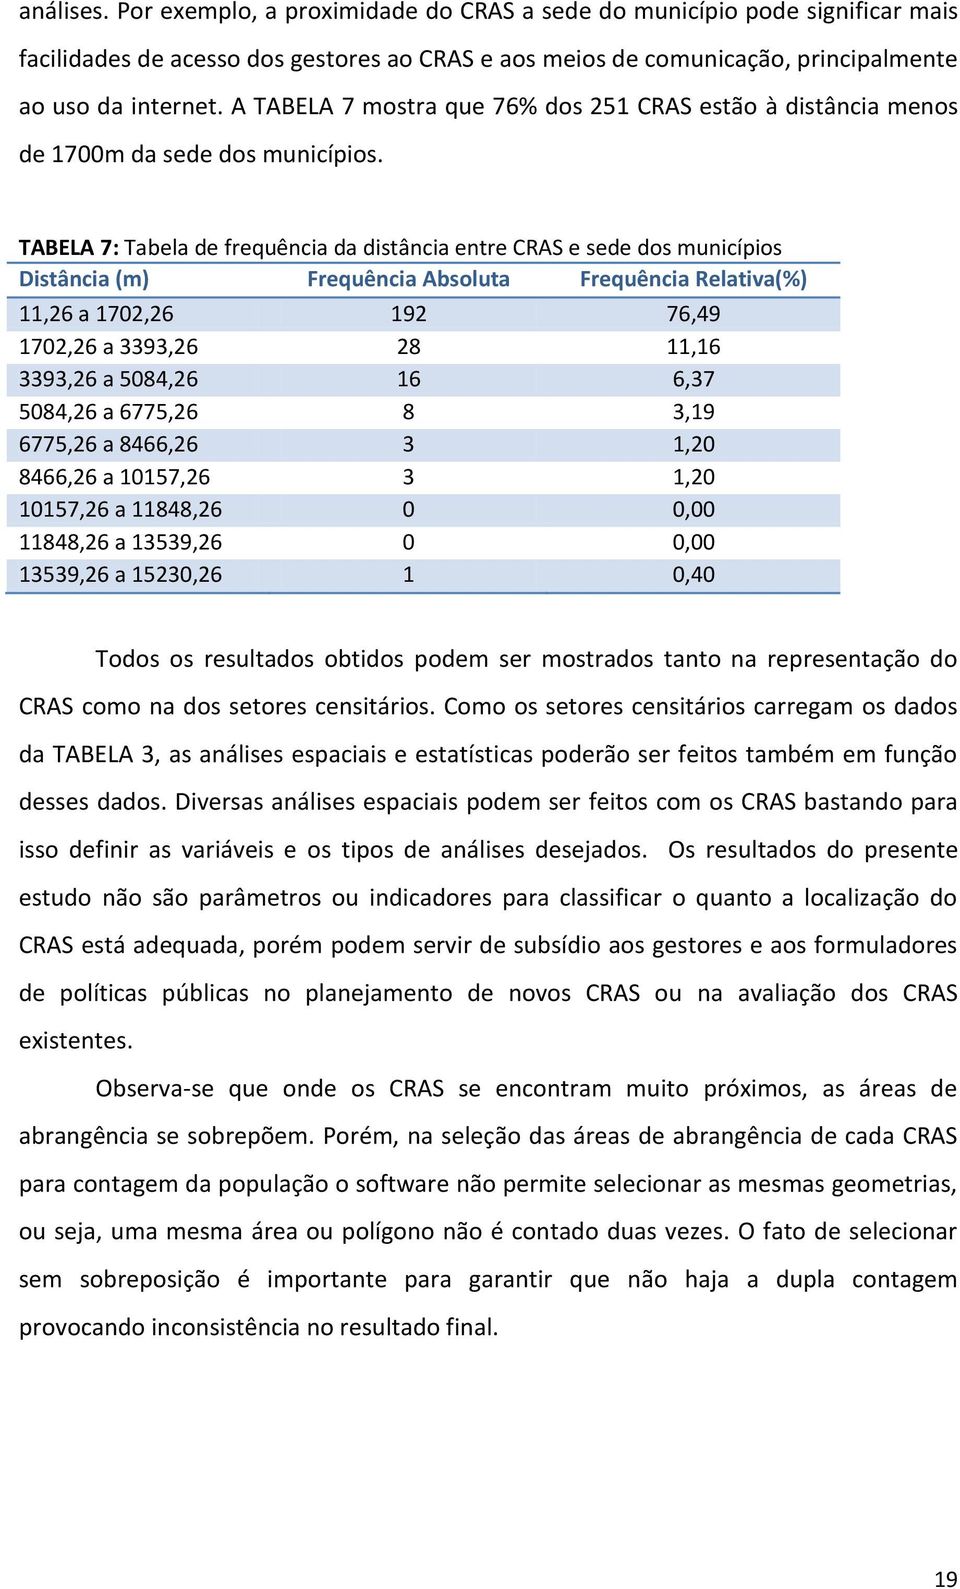 TABELA 7: Tabela de frequência da distância entre CRAS e sede dos municípios Distância (m) Frequência Absoluta Frequência Relativa(%) 11,26 a 1702,26 192 76,49 1702,26 a 3393,26 28 11,16 3393,26 a